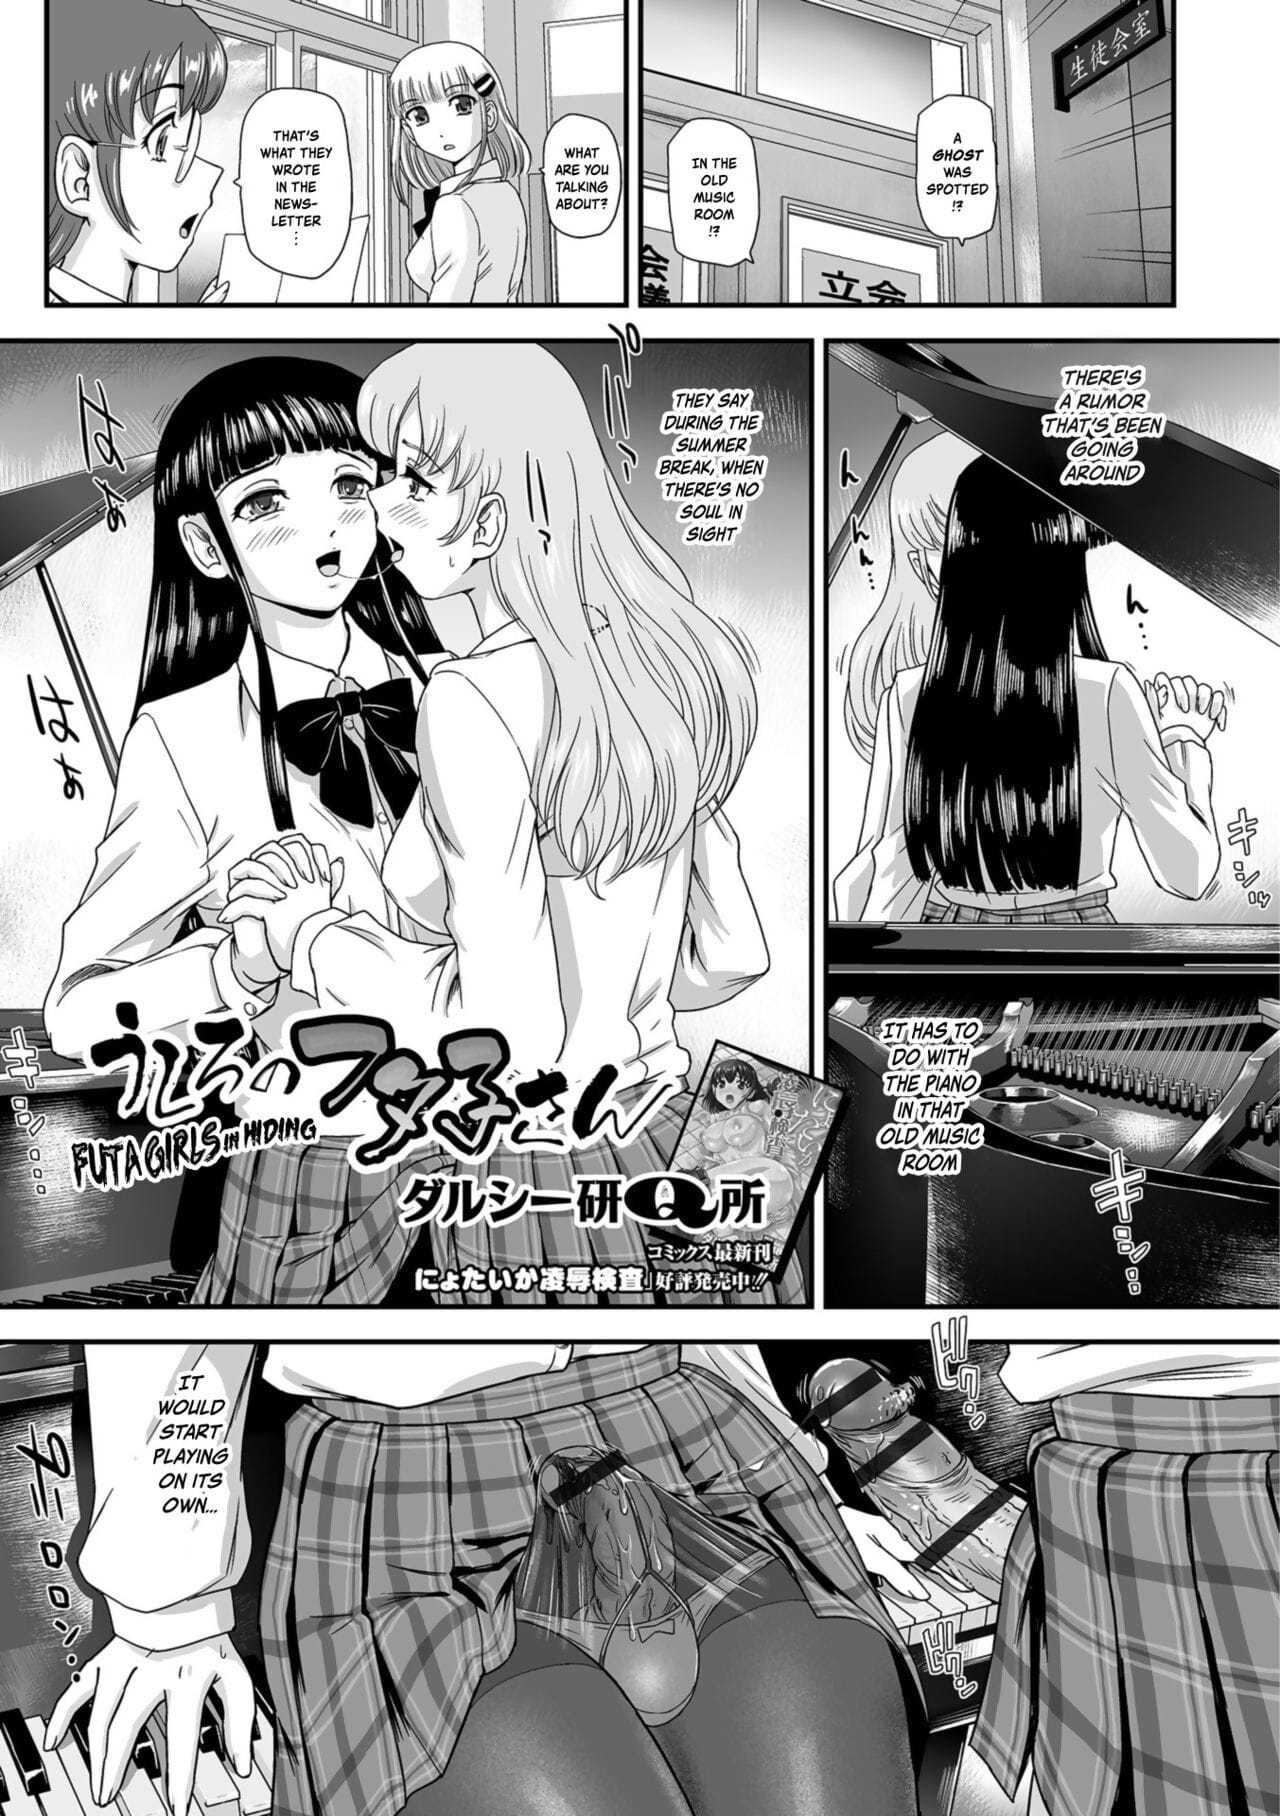 Ushiro no Futa-Ko-san - Futa Girls in Hiding page 1